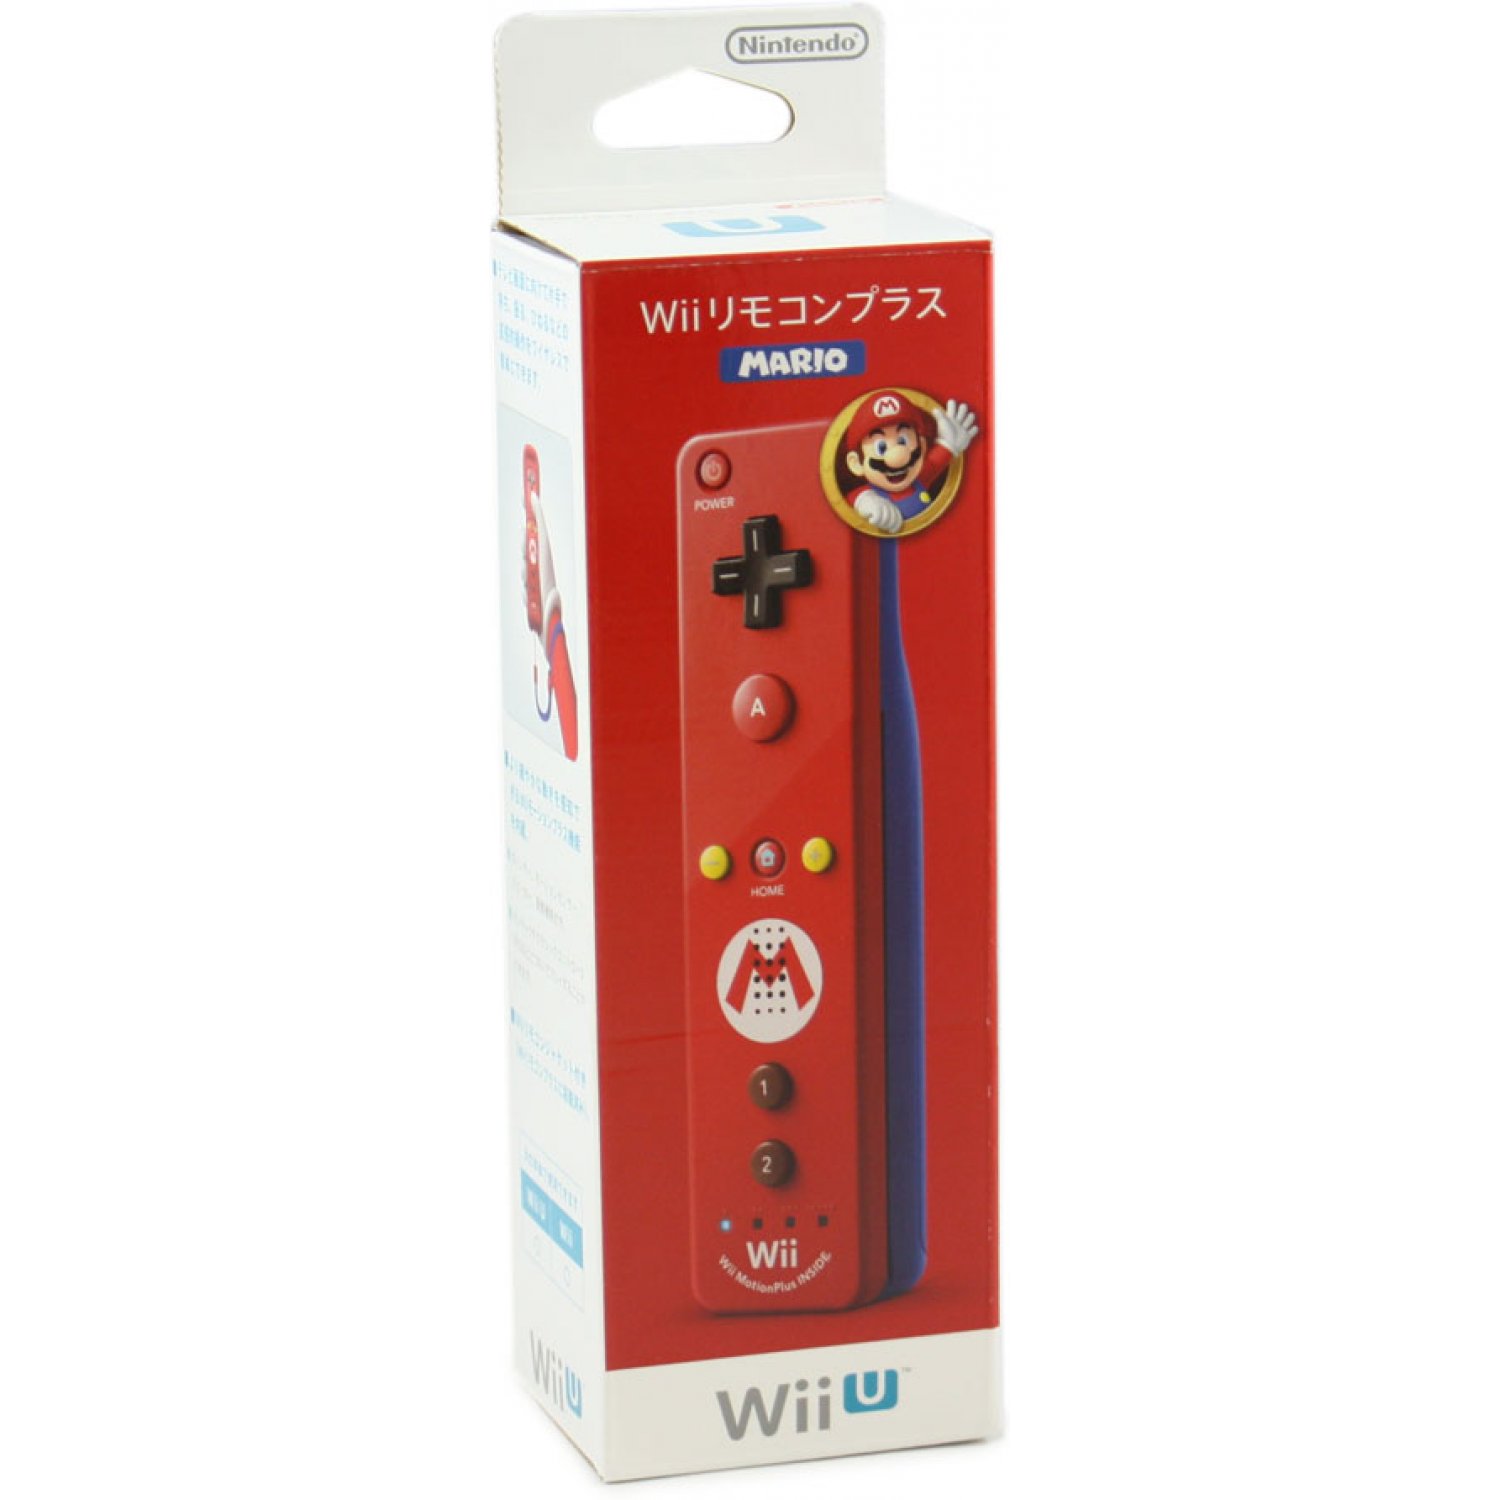 Nintendo Wii Remote Plus Mario Limited Edition (JP, újszerű) - Nintendo Wii Kiegészítők